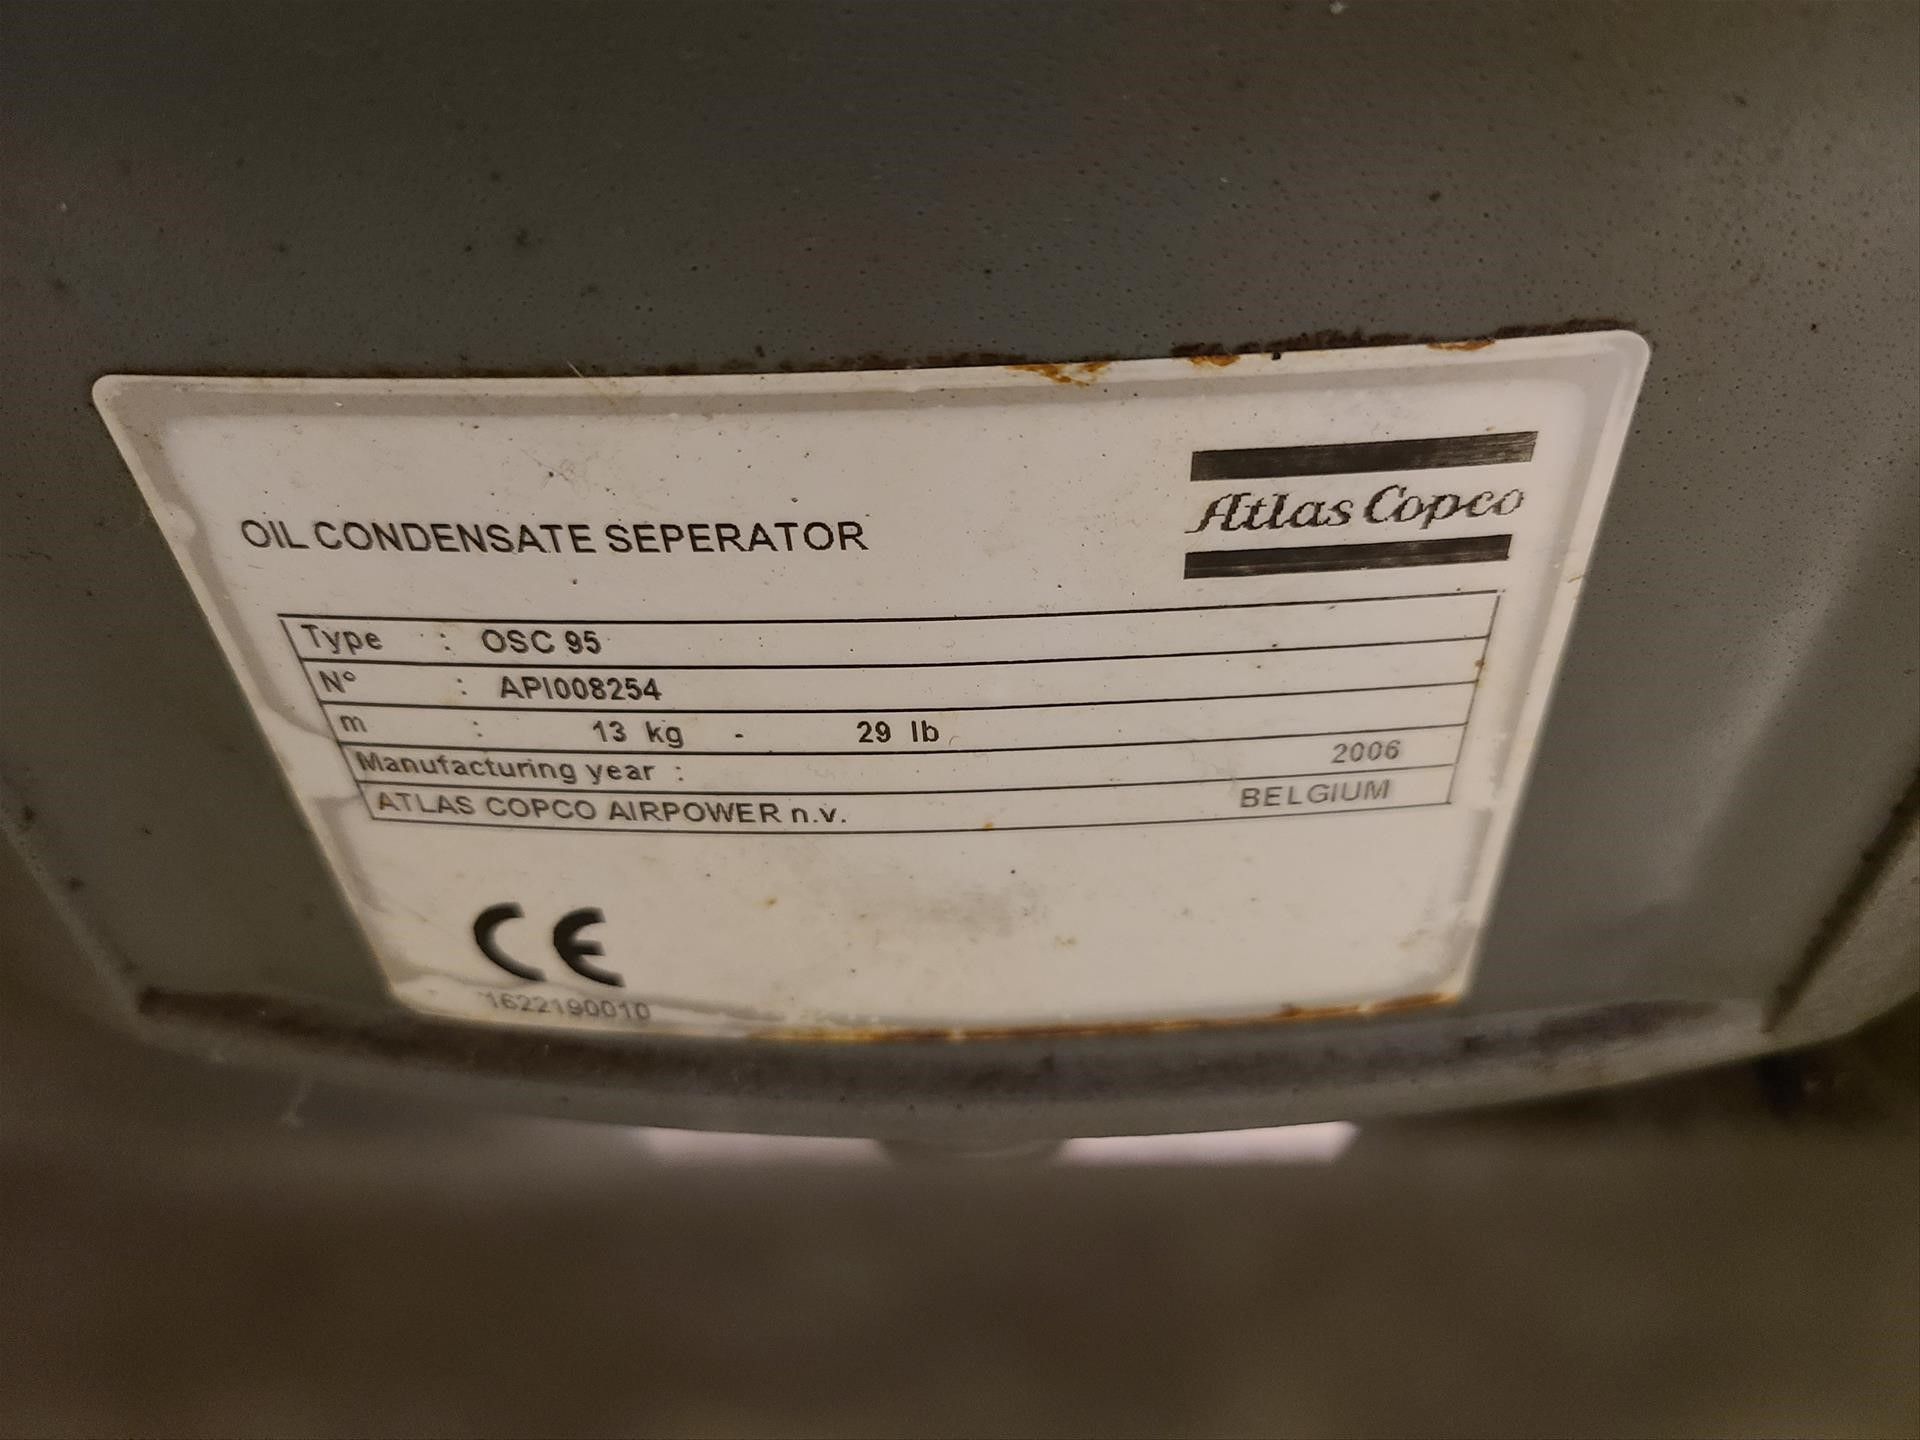 Atlas Copco air dryer, mod. CD60+, ser. no. API095856, w/ Atlas Copco oil condensate seperator, - Image 7 of 7